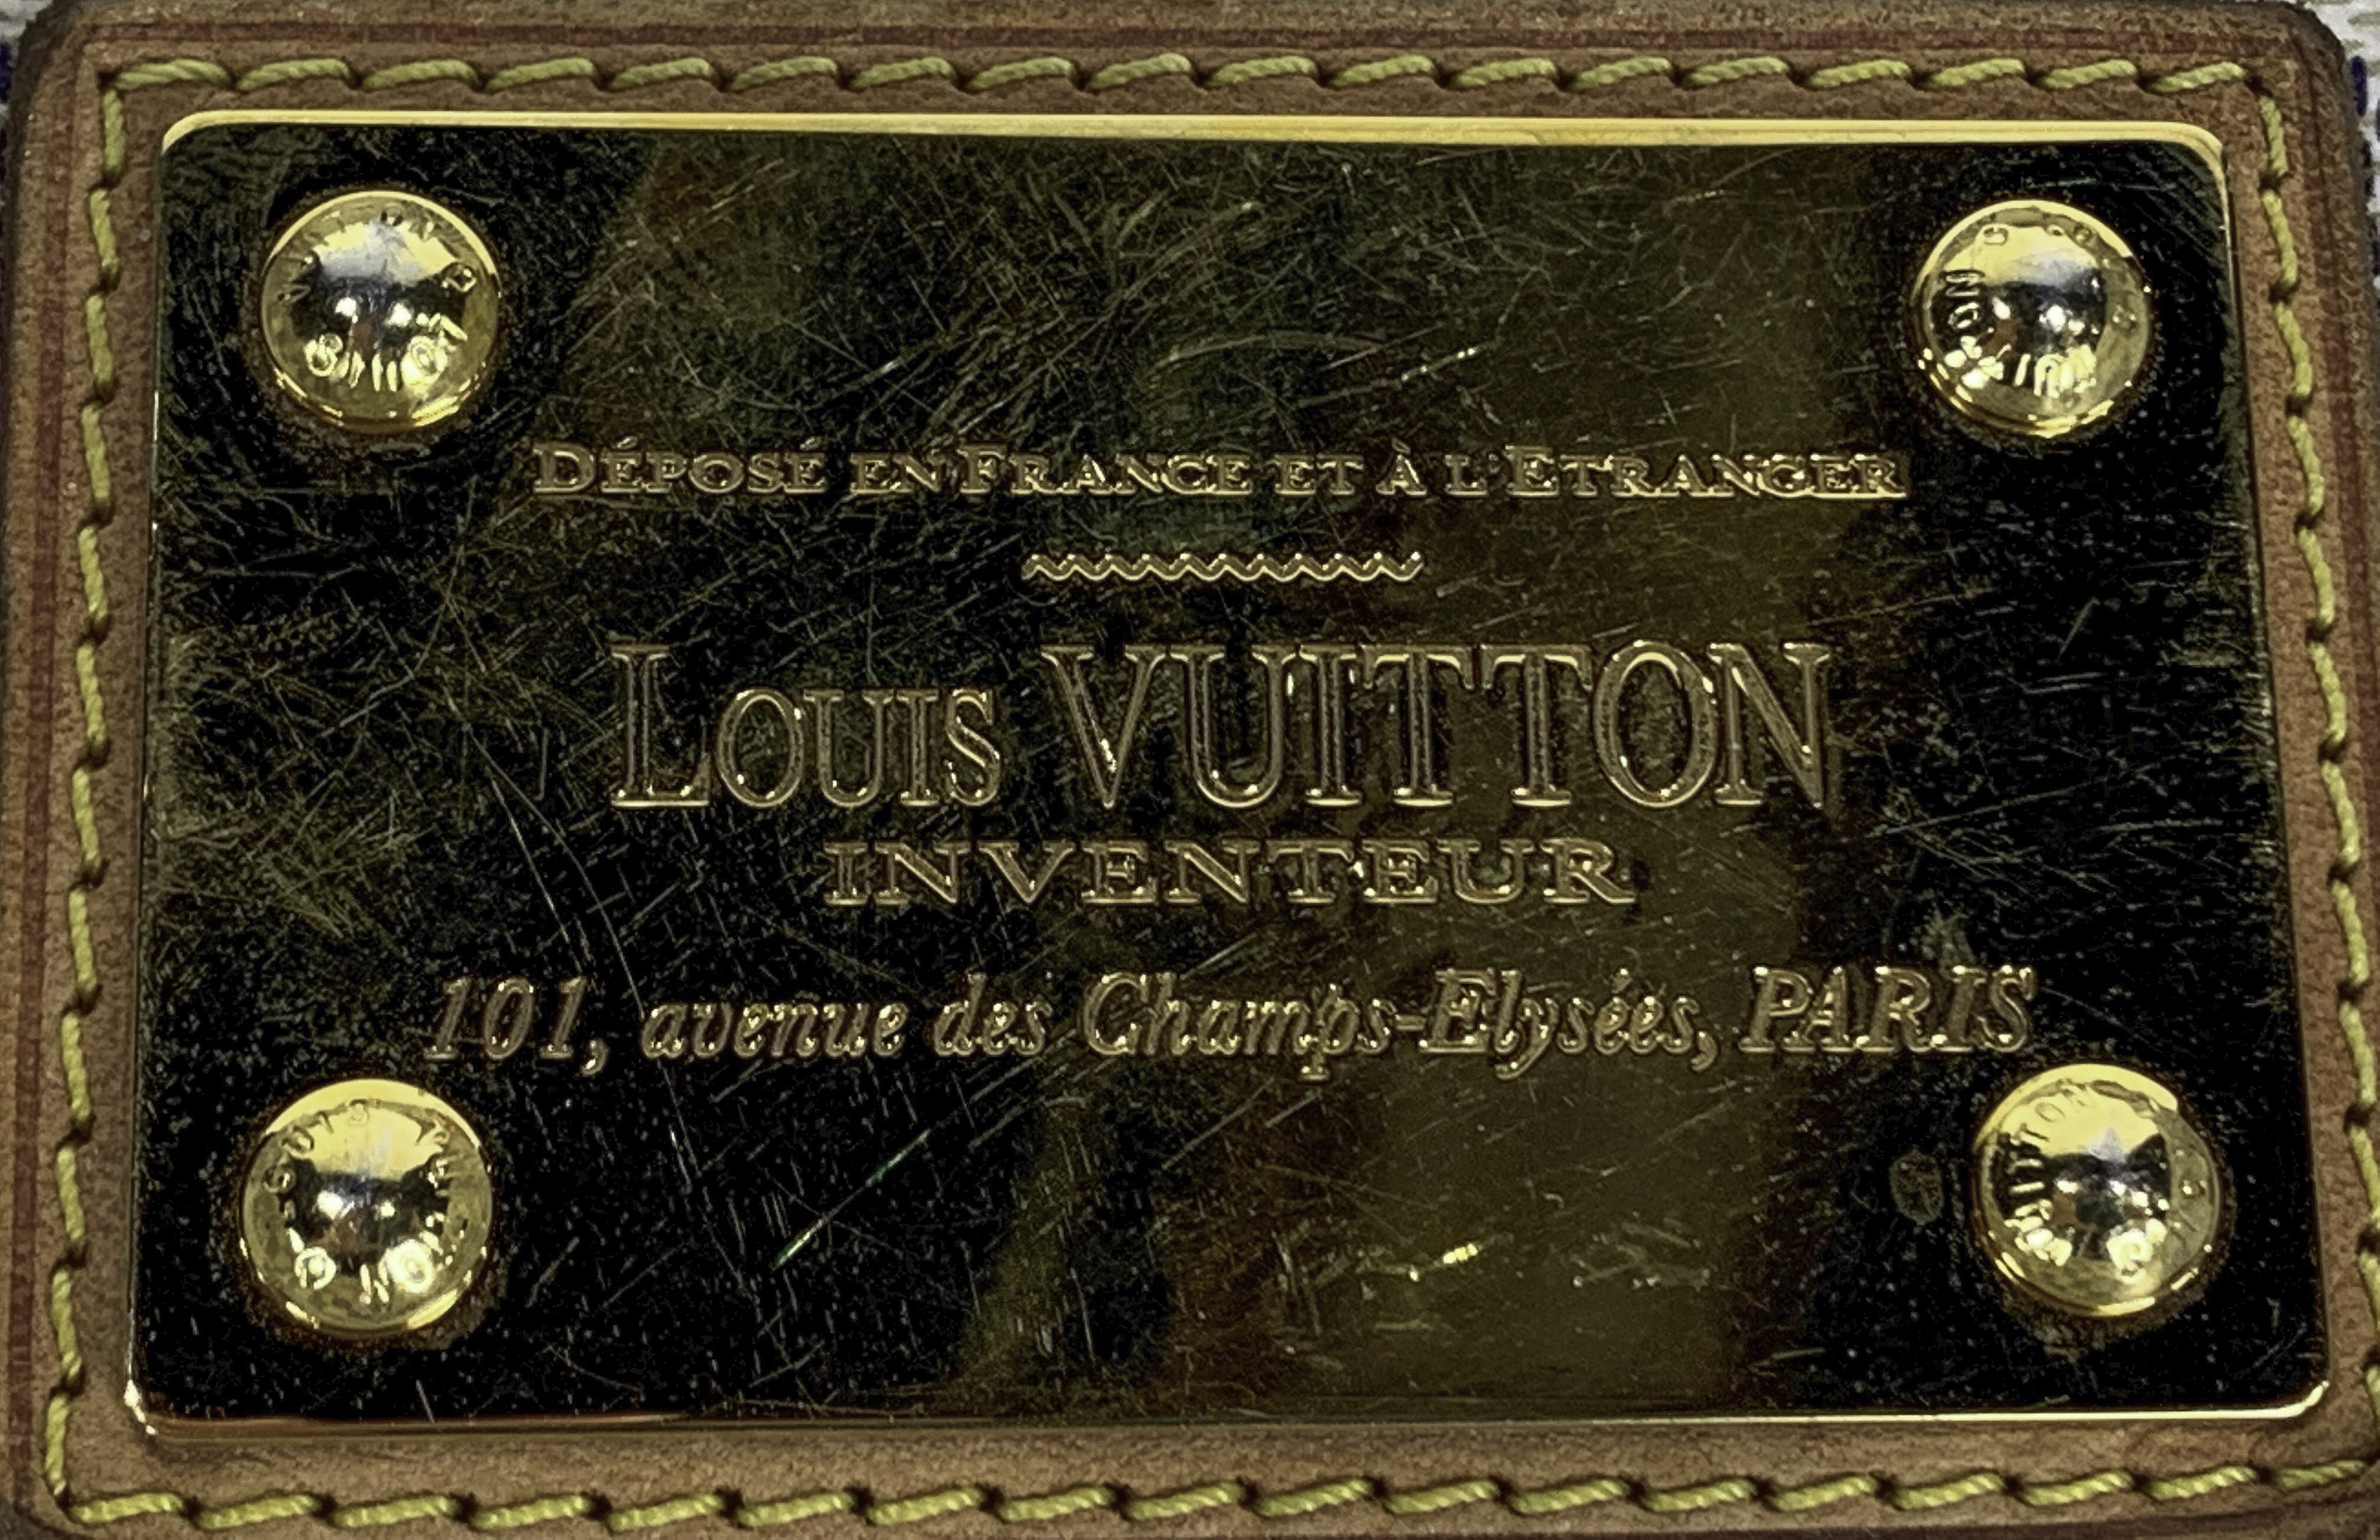 th?q=2023 Louis vuitton inventpdr both Vuitton 